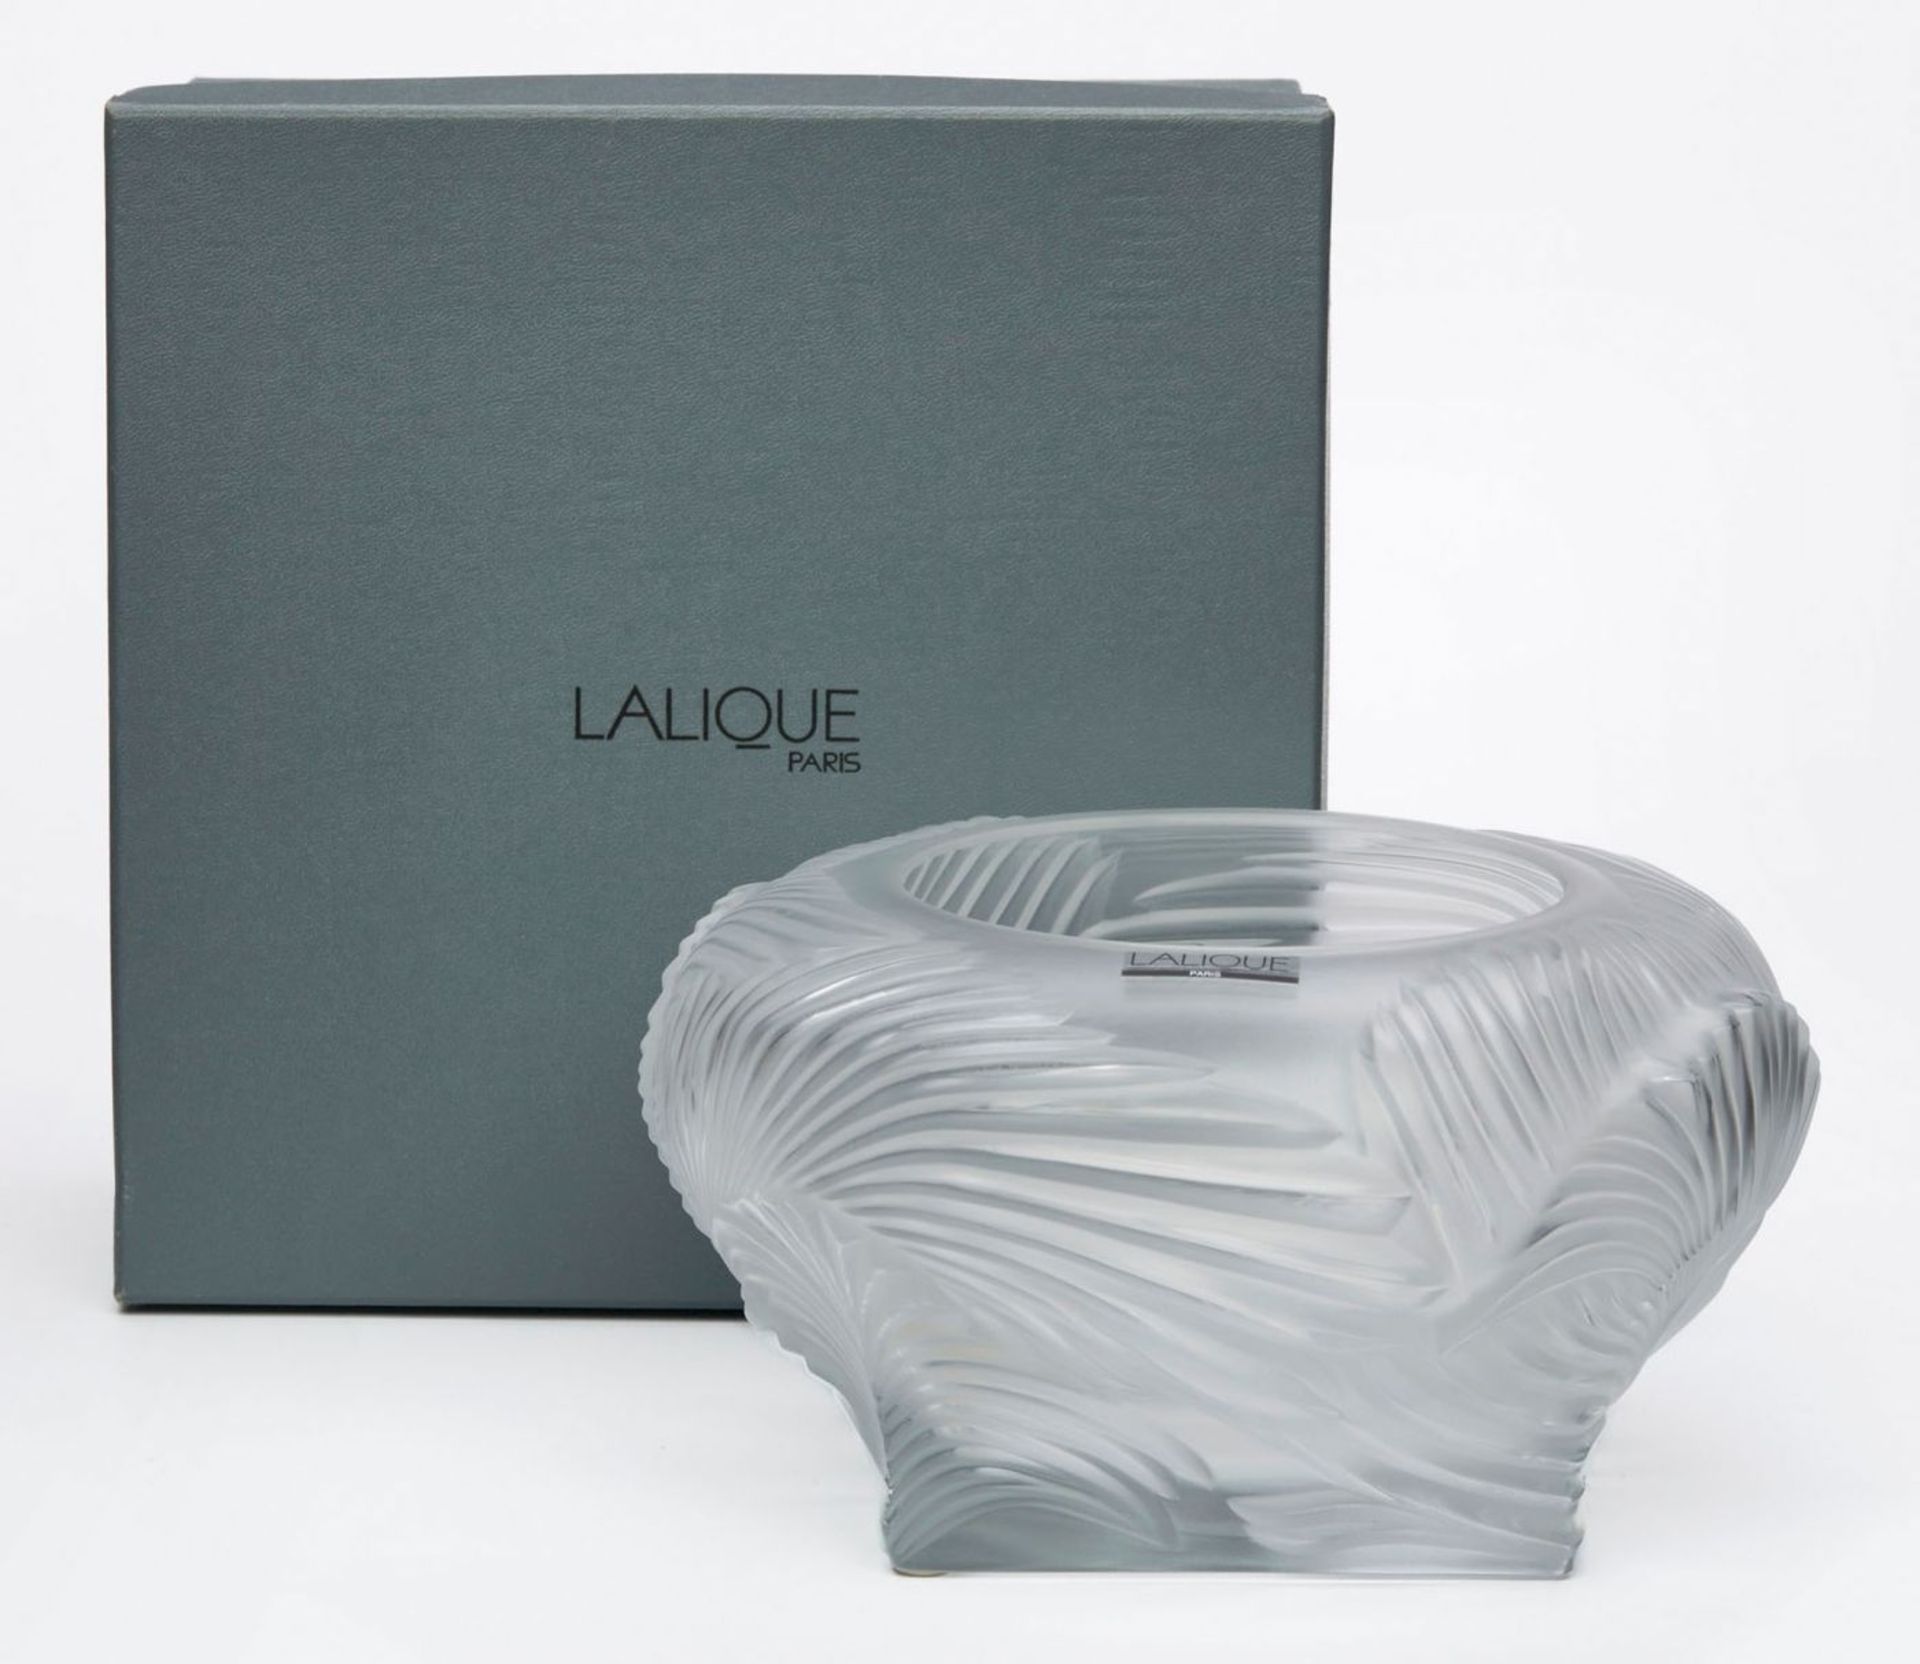 Vase "Hutan", Lalique Ende 20. Jh. - Bild 2 aus 2